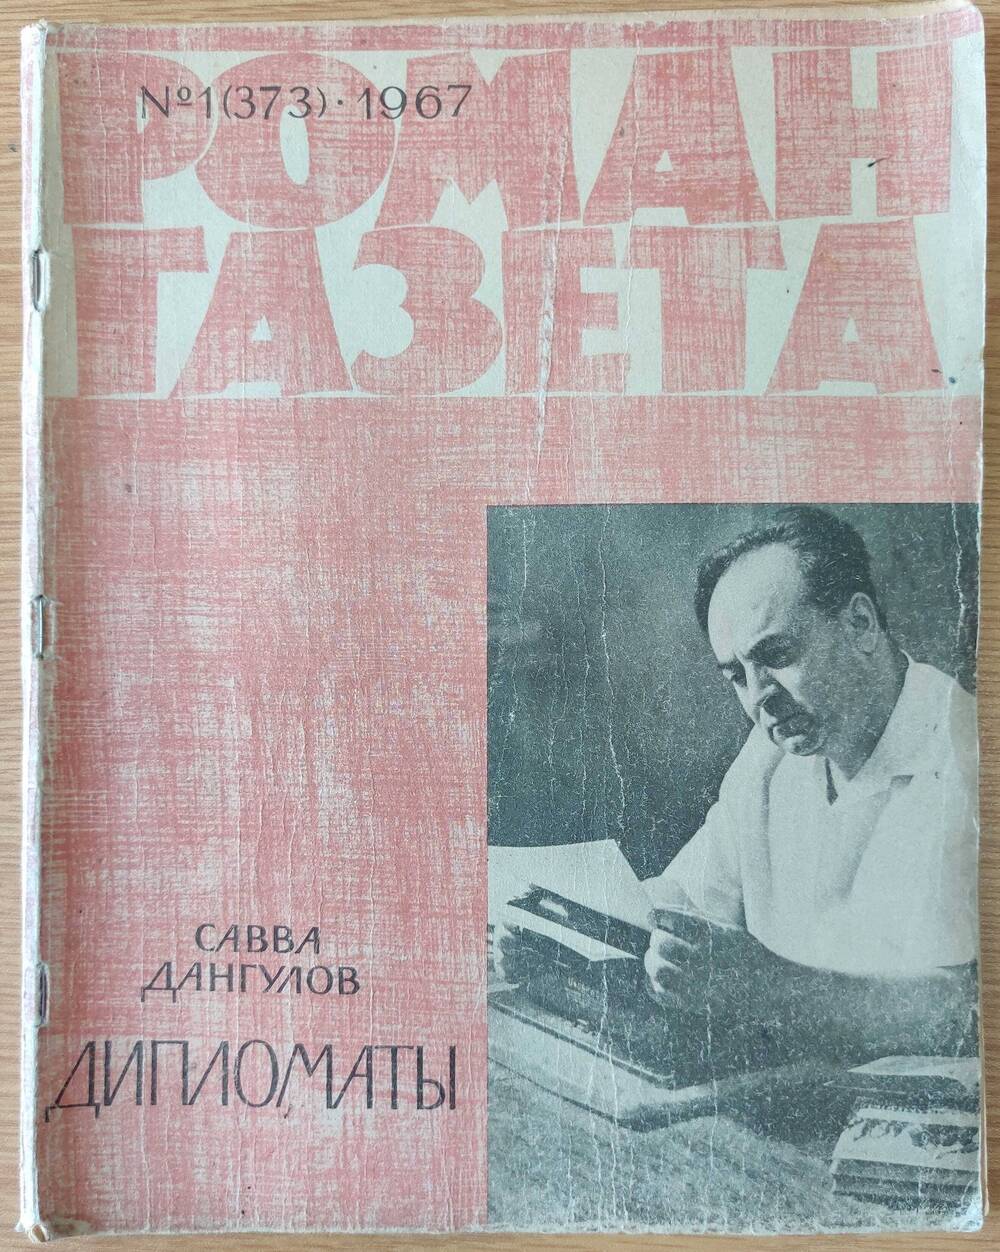 Журнал «Роман - Газета» №1 (373). 1967